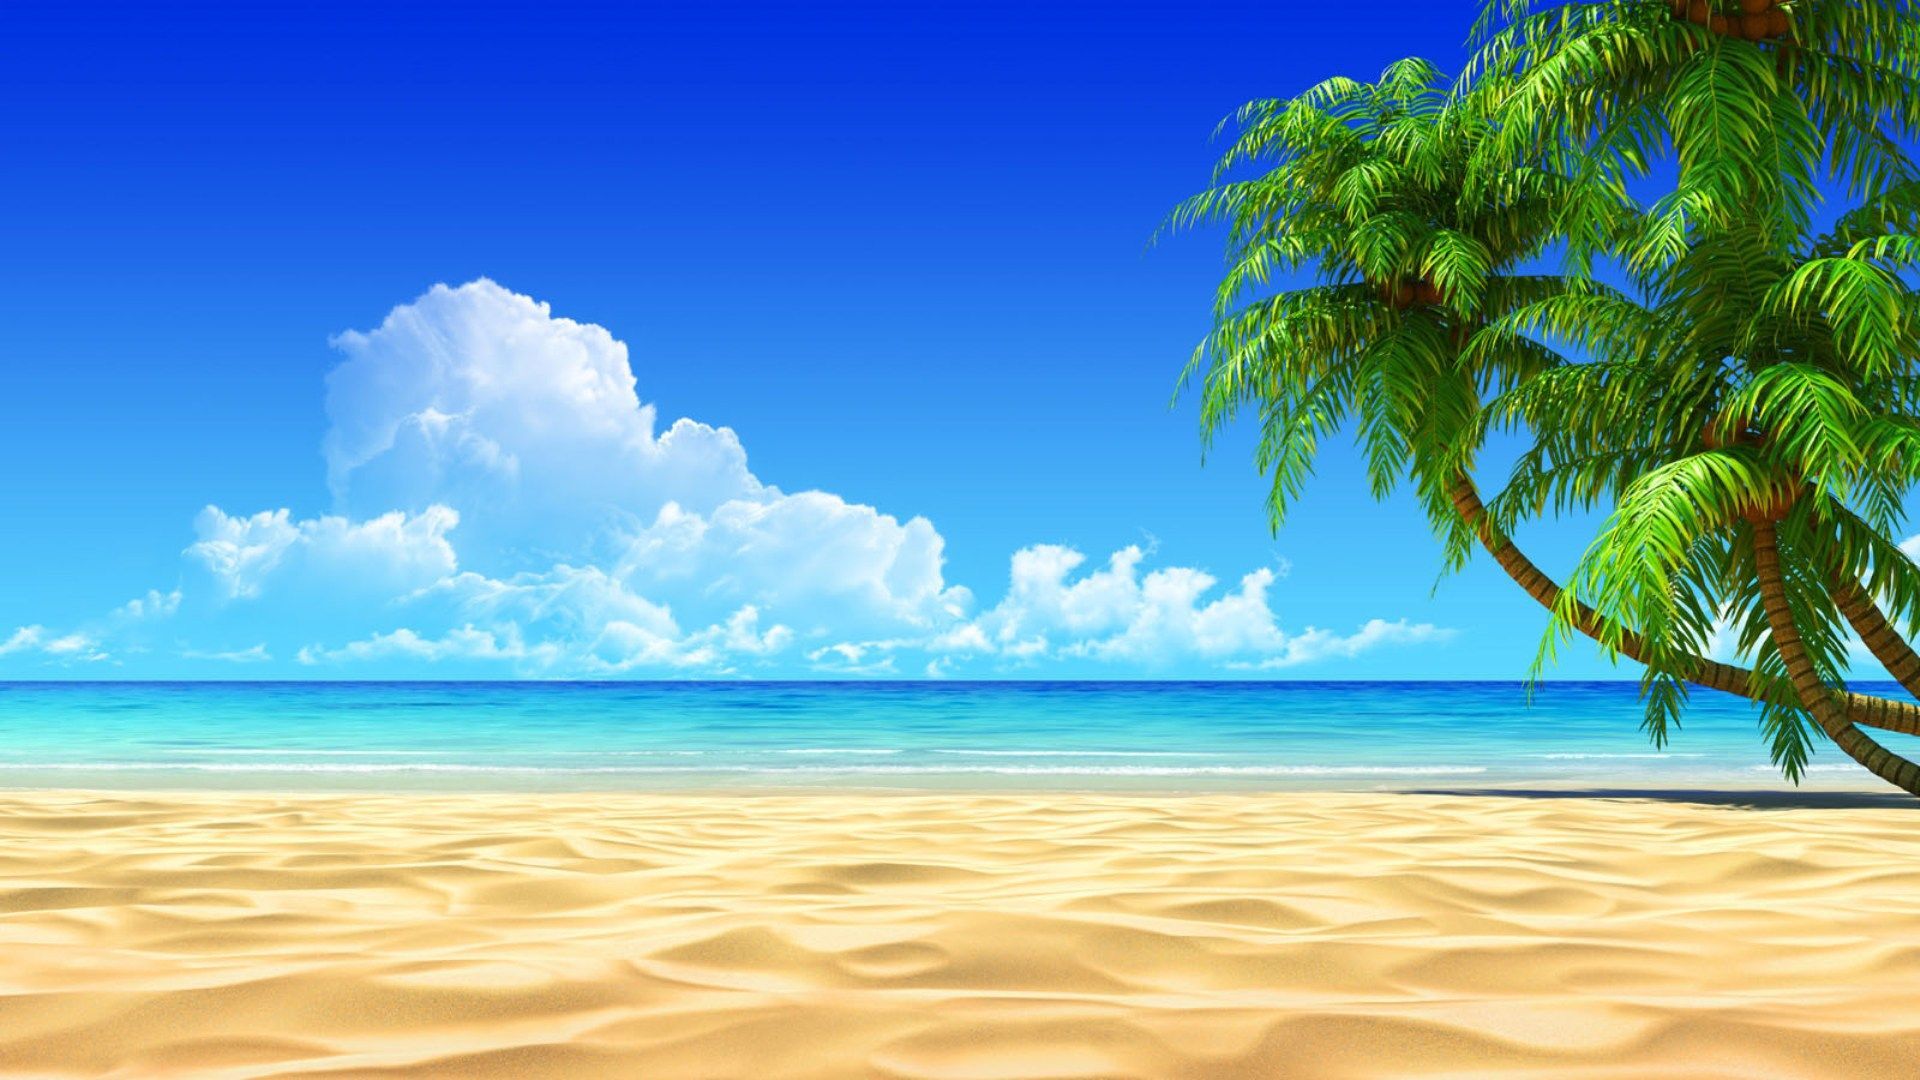 Free Desktop Backgrounds Beach Scenes